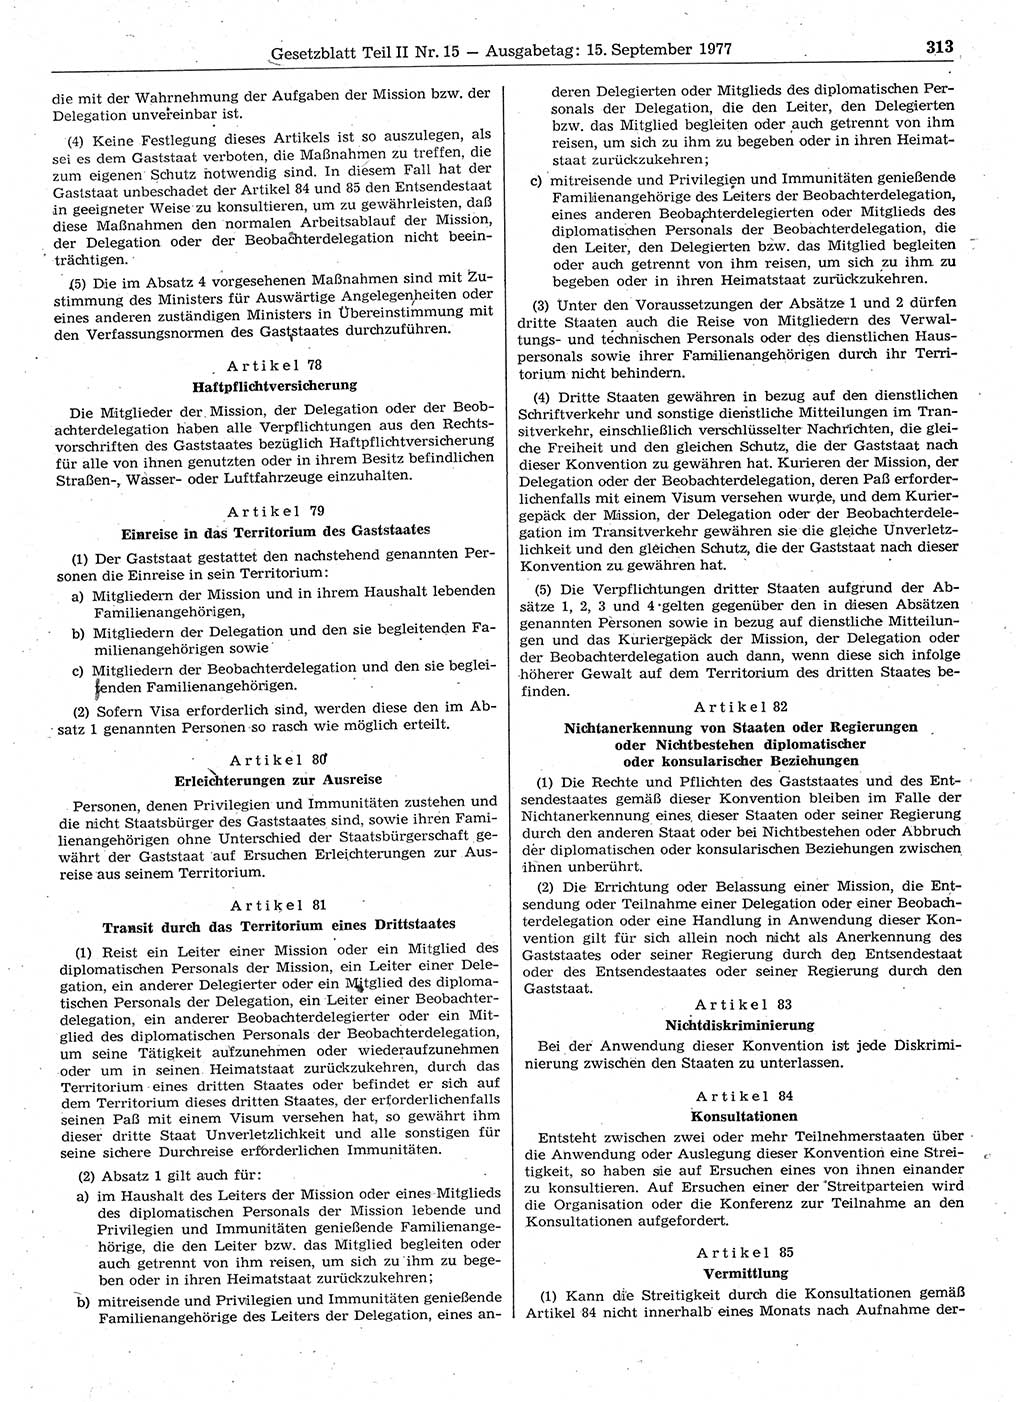 Gesetzblatt (GBl.) der Deutschen Demokratischen Republik (DDR) Teil ⅠⅠ 1977, Seite 313 (GBl. DDR ⅠⅠ 1977, S. 313)